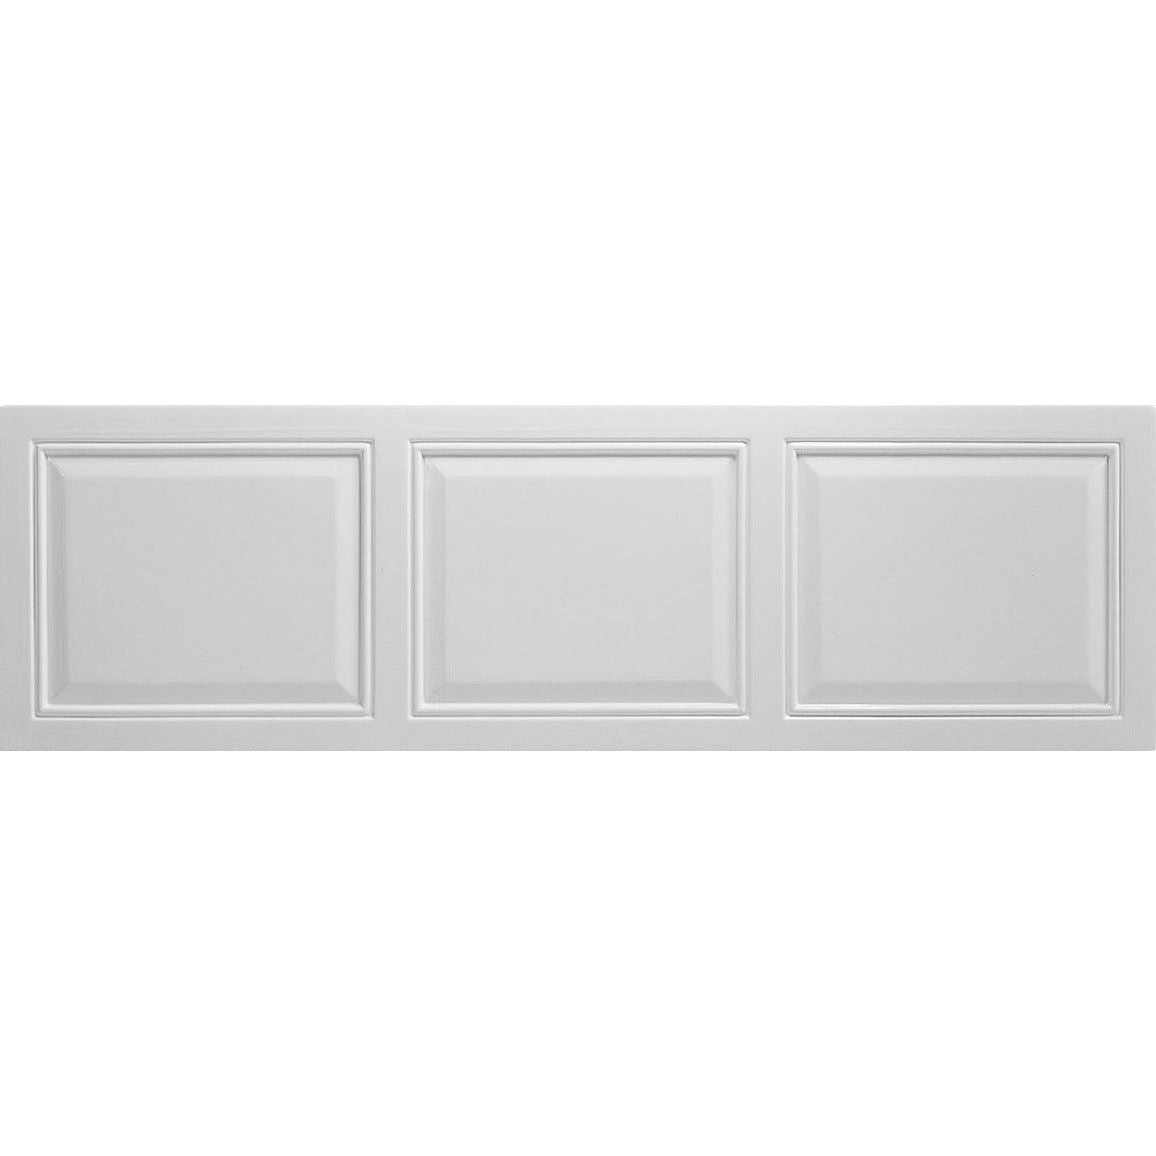 Panel frontal Hewett de 1700 mm - Blanco